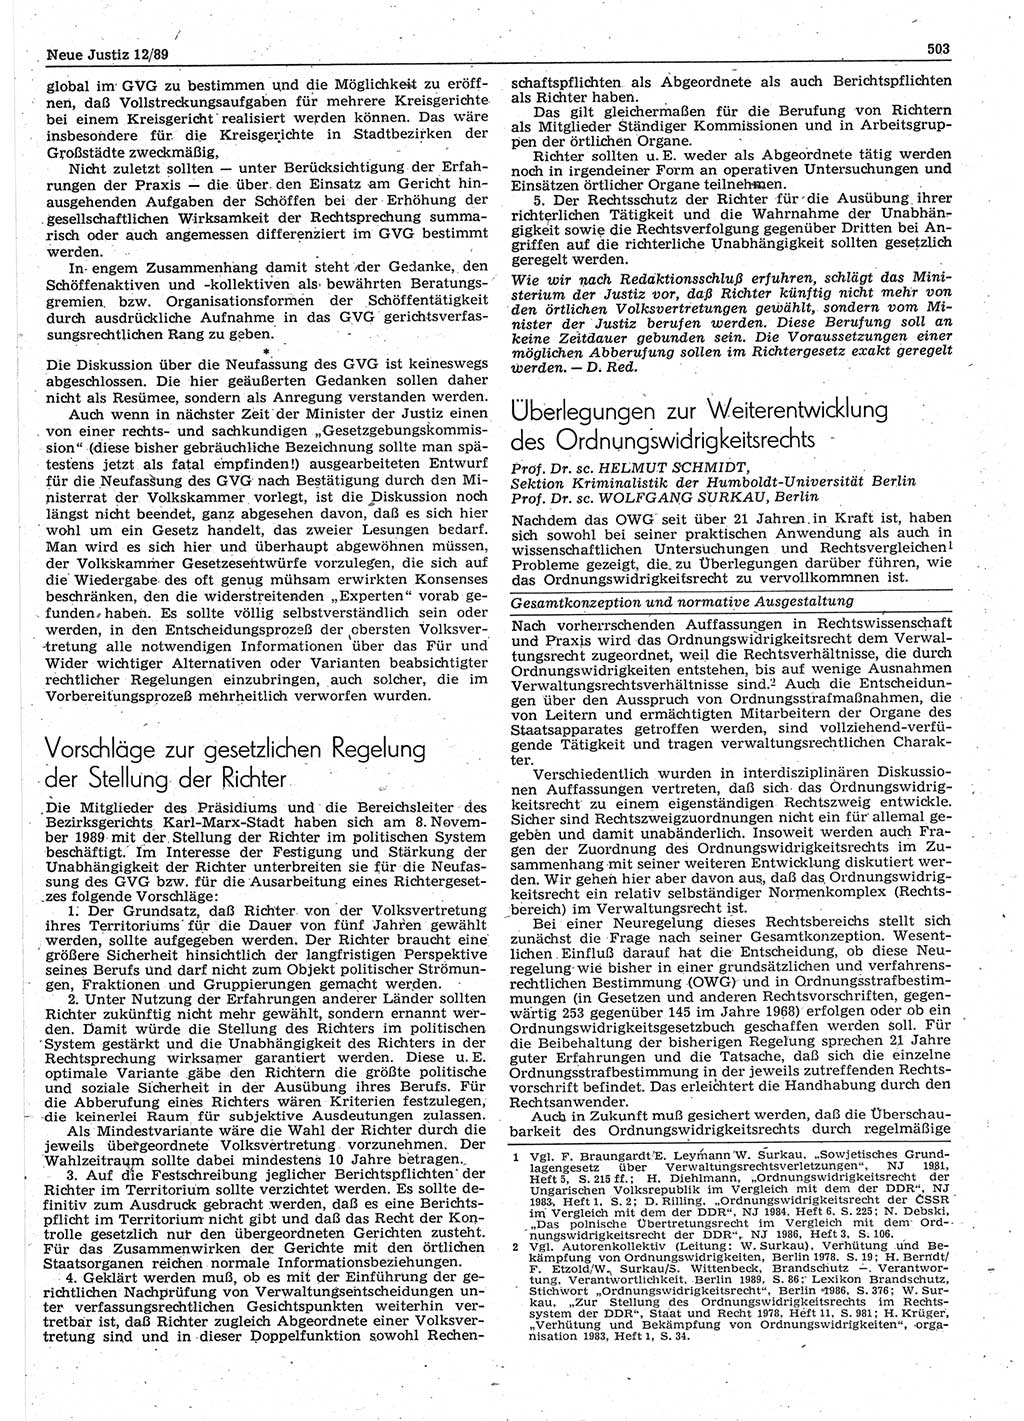 Neue Justiz (NJ), Zeitschrift für sozialistisches Recht und Gesetzlichkeit [Deutsche Demokratische Republik (DDR)], 43. Jahrgang 1989, Seite 503 (NJ DDR 1989, S. 503)